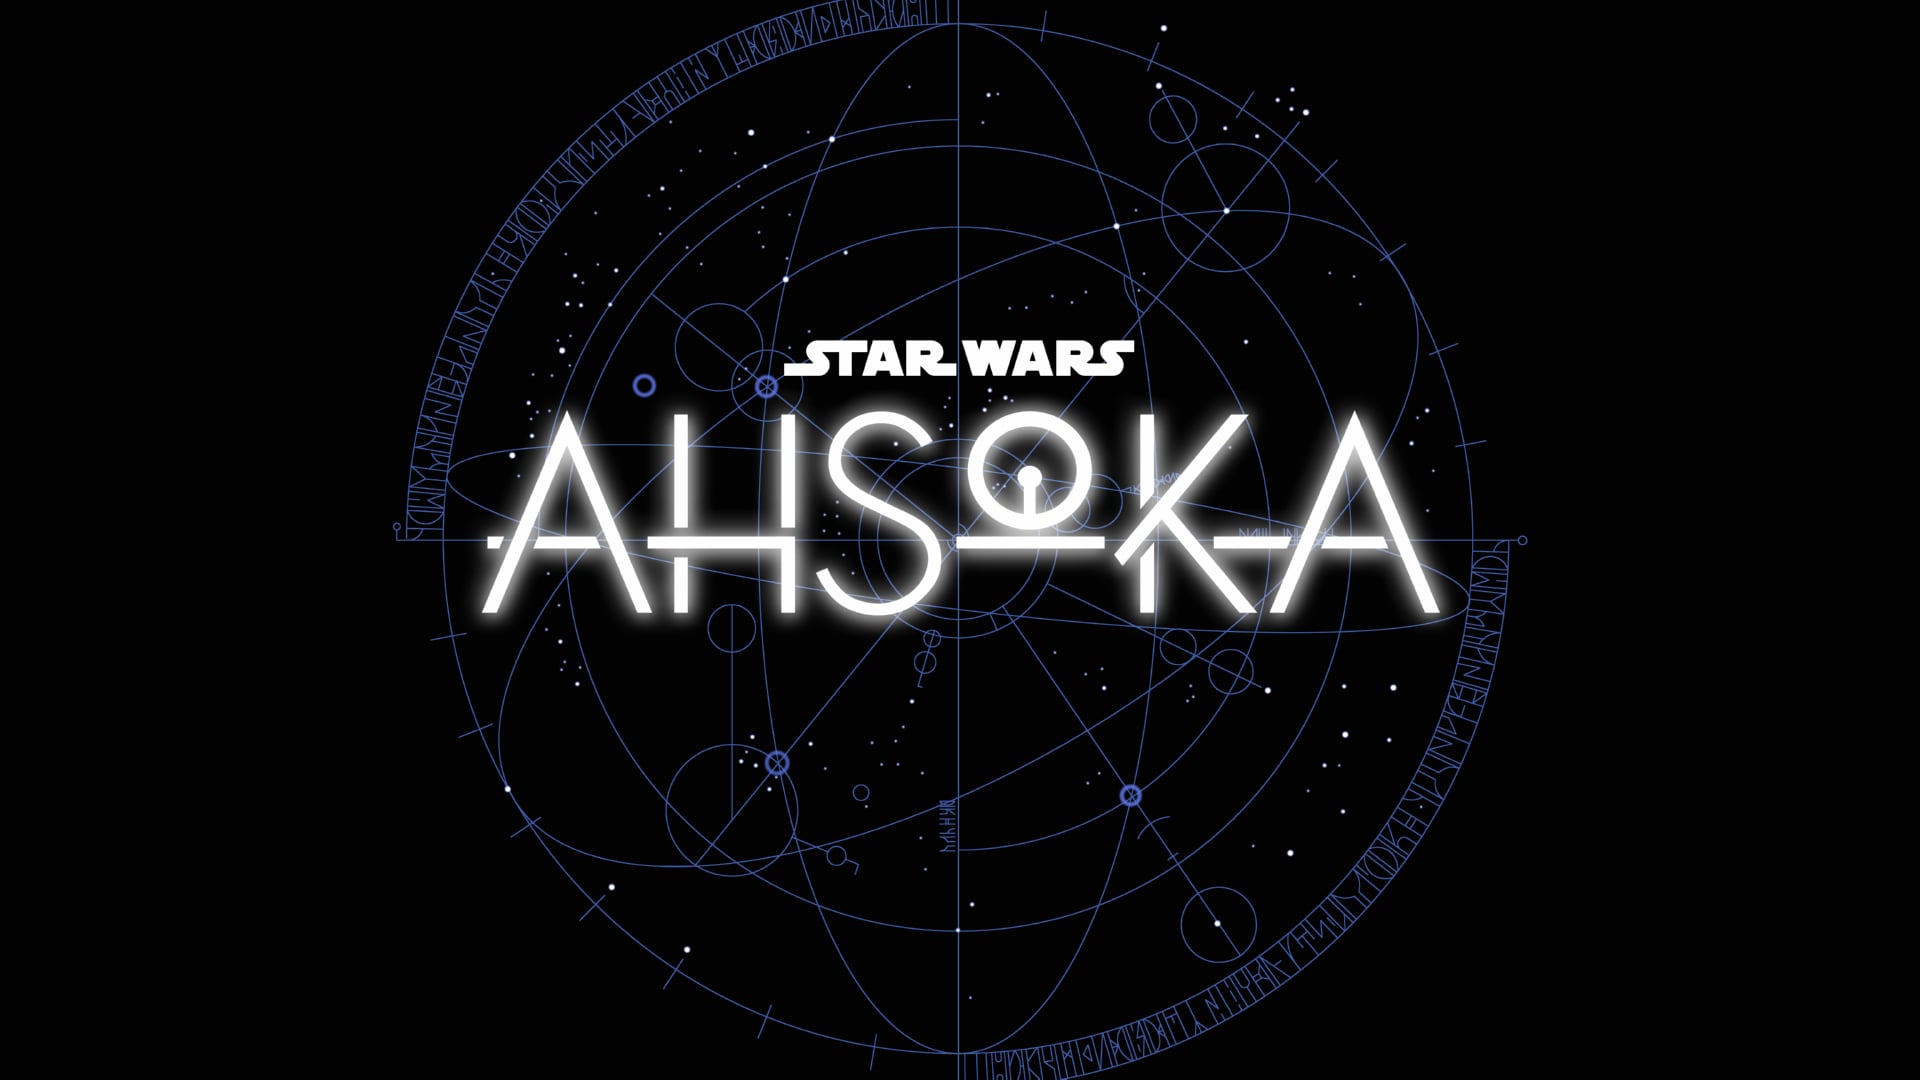 Digital Art Star Wars Ahsoka at 1334 x 750 iPhone 7 size wallpapers HD quality